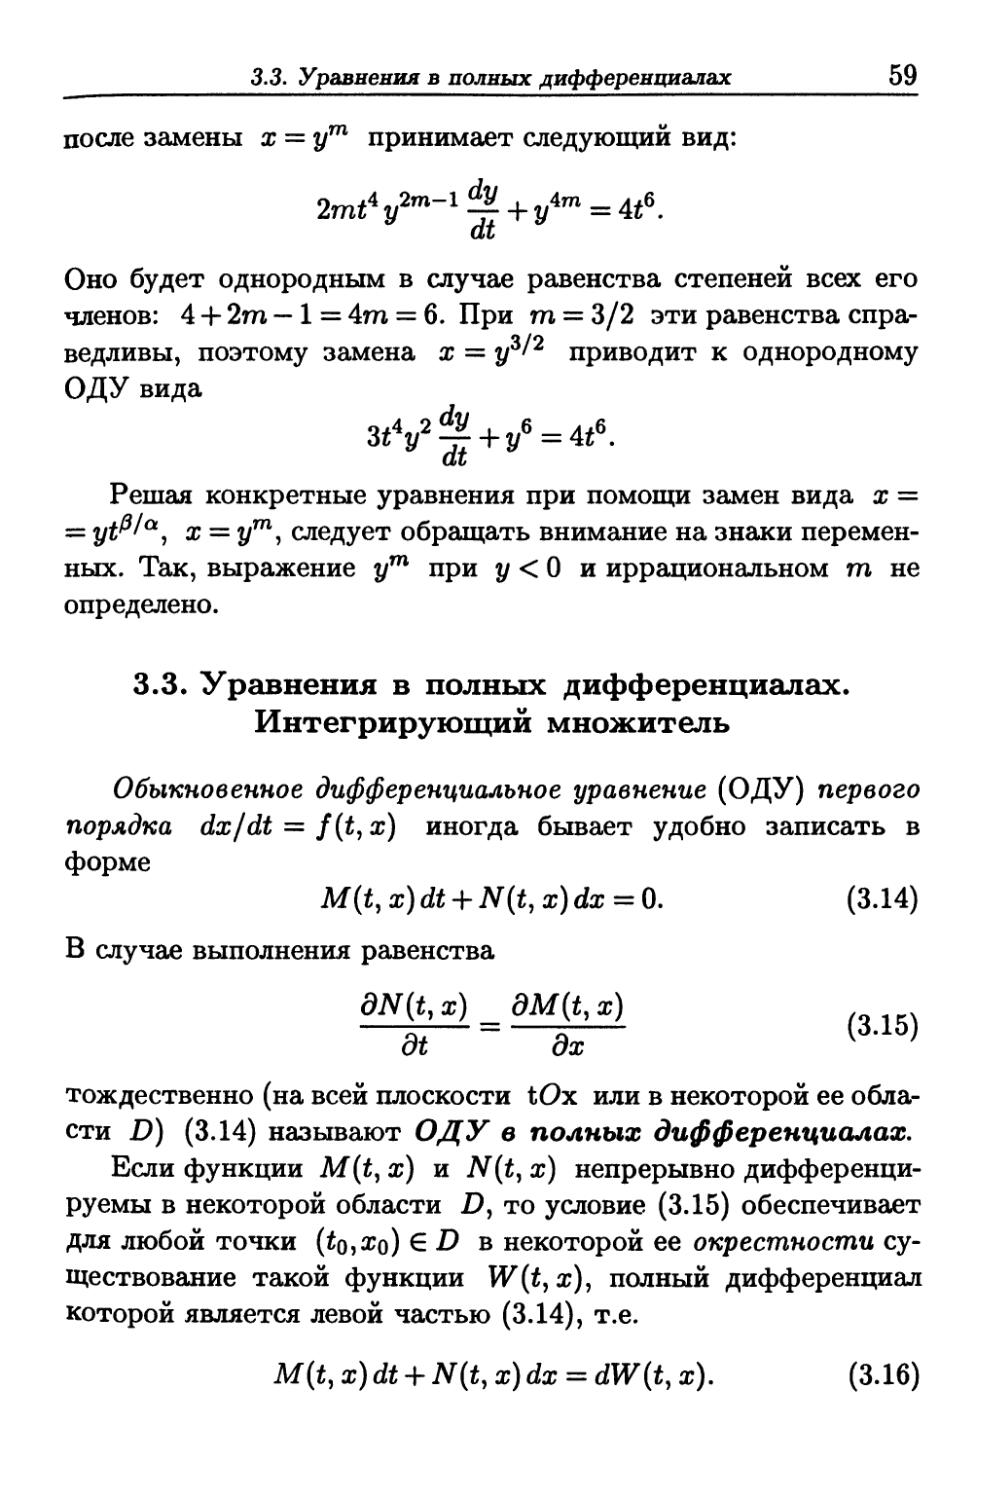 3.3. Уравнения в полных дифференциалах. Интегрирующий множитель